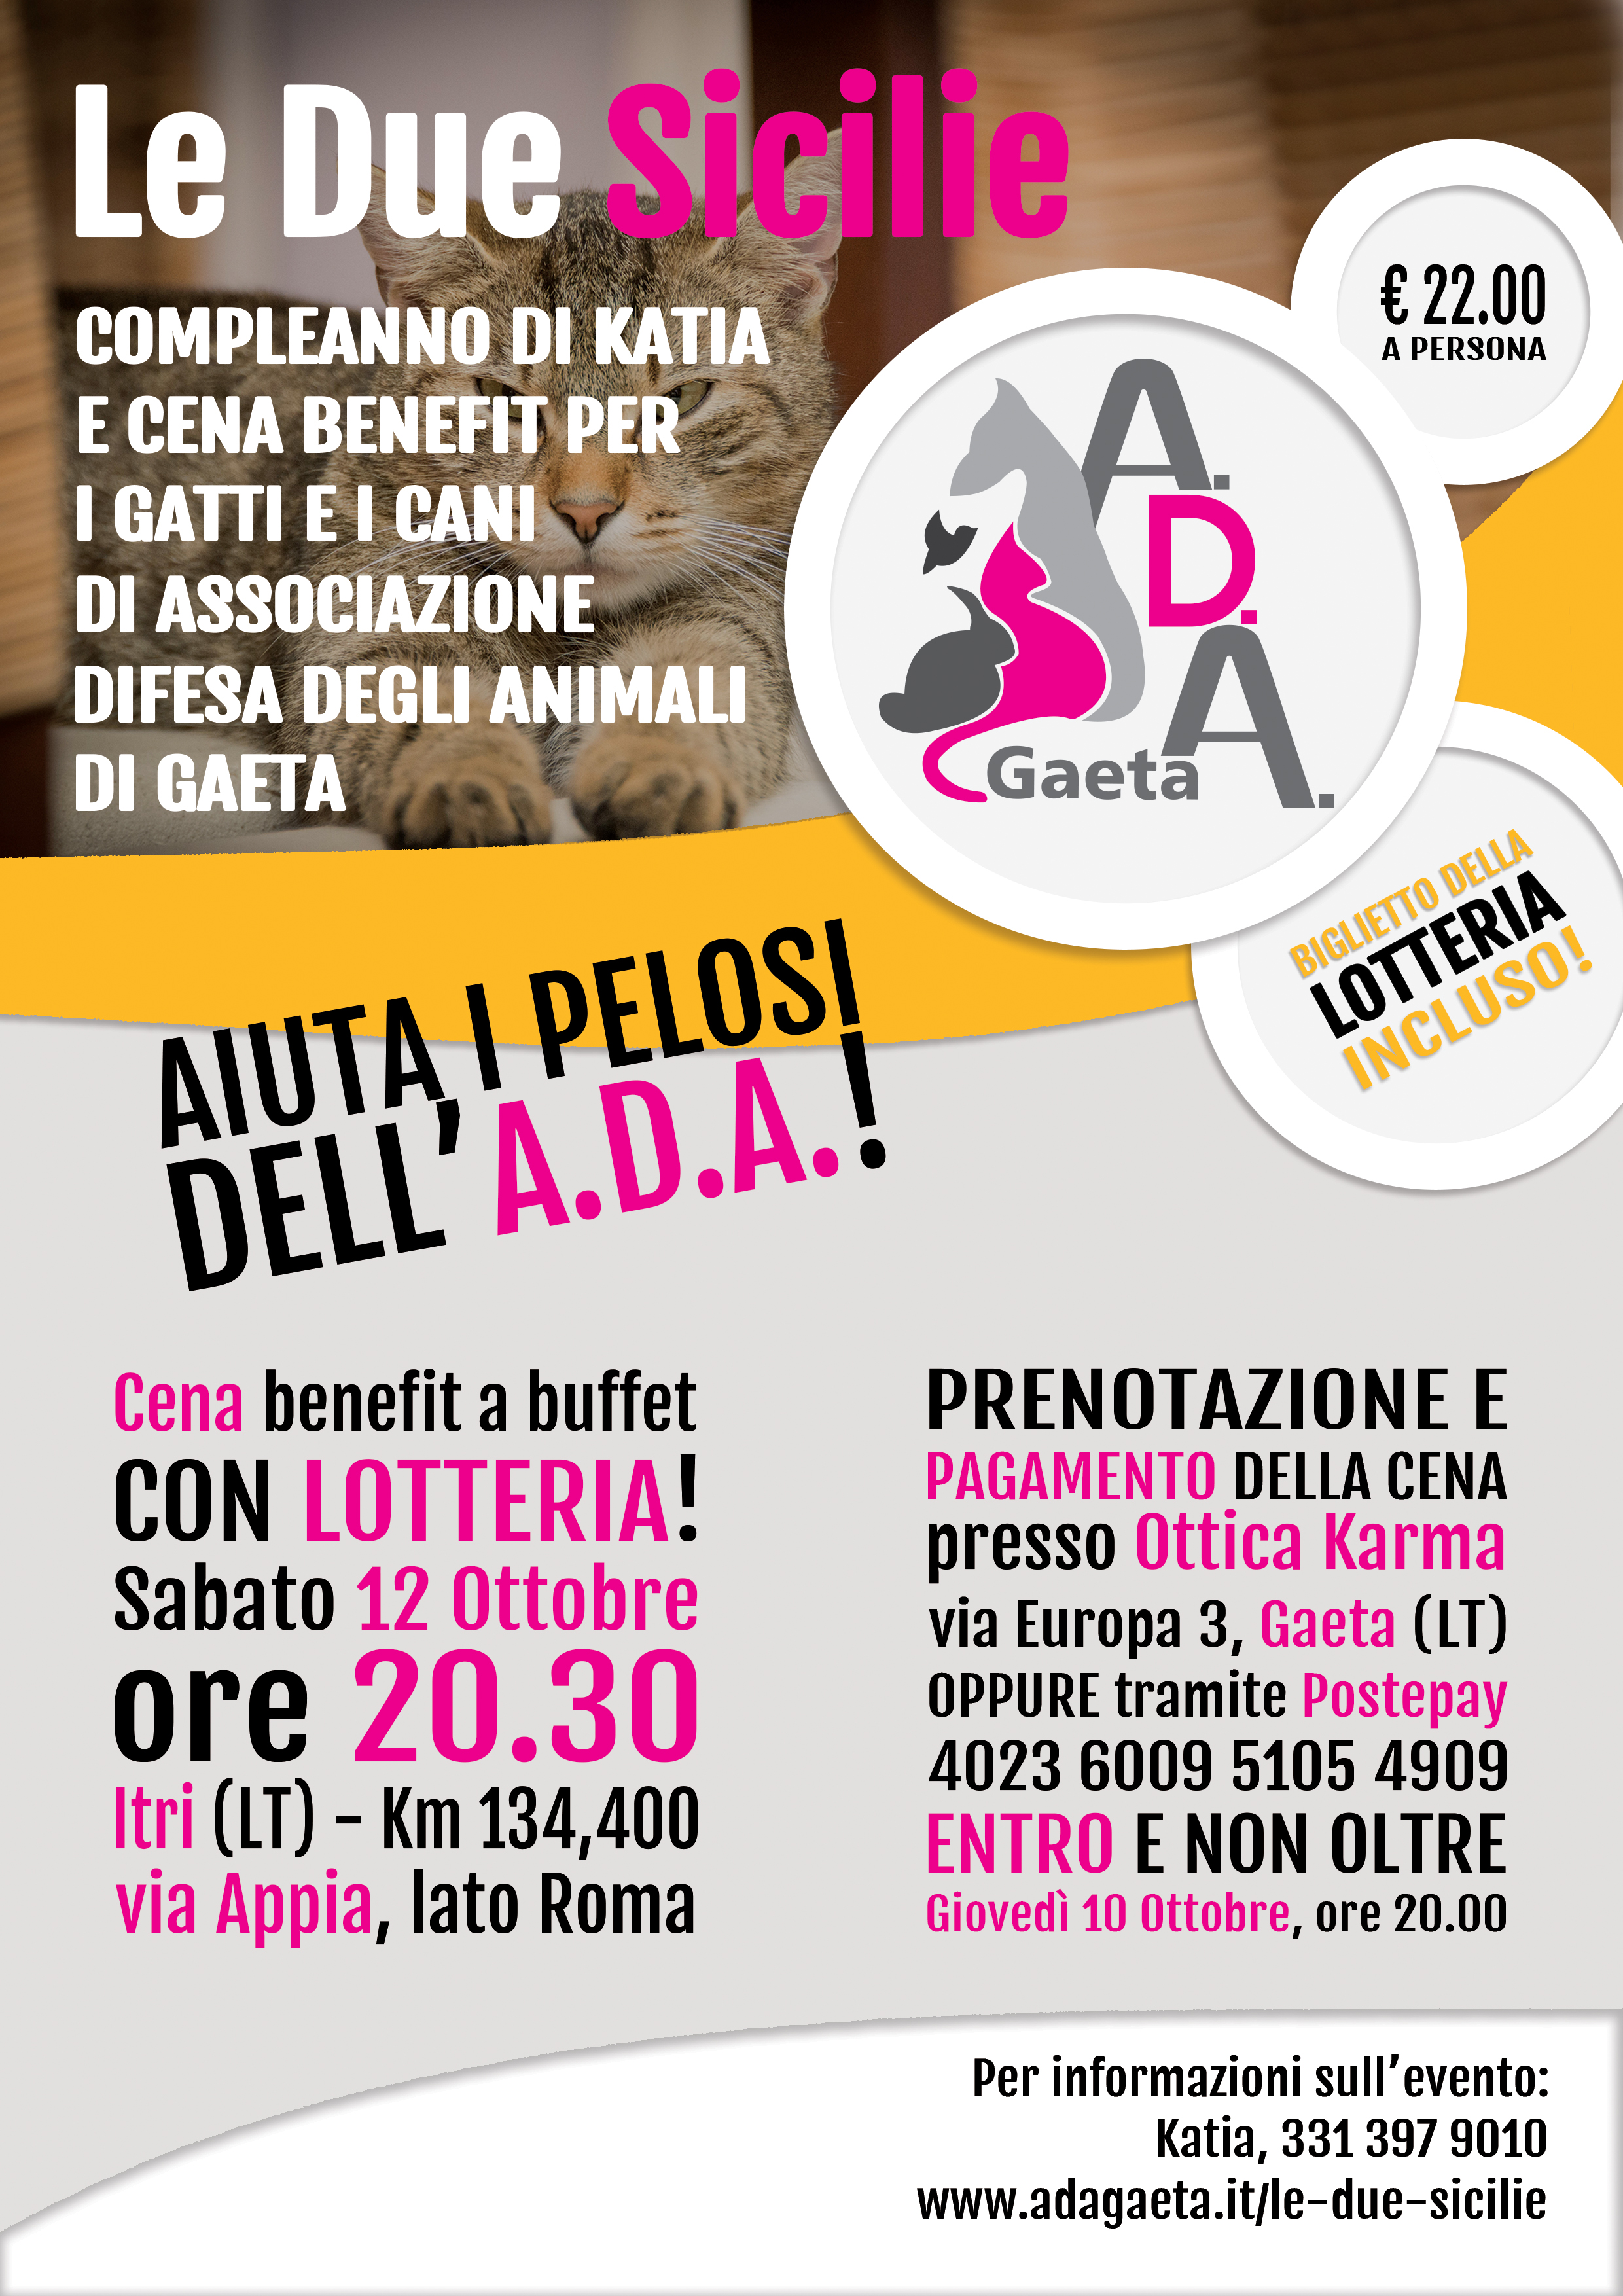 Le Due Sicilie - Cena benefit per i cani e i gatti di Associazione Difesa degli Animali di Gaeta